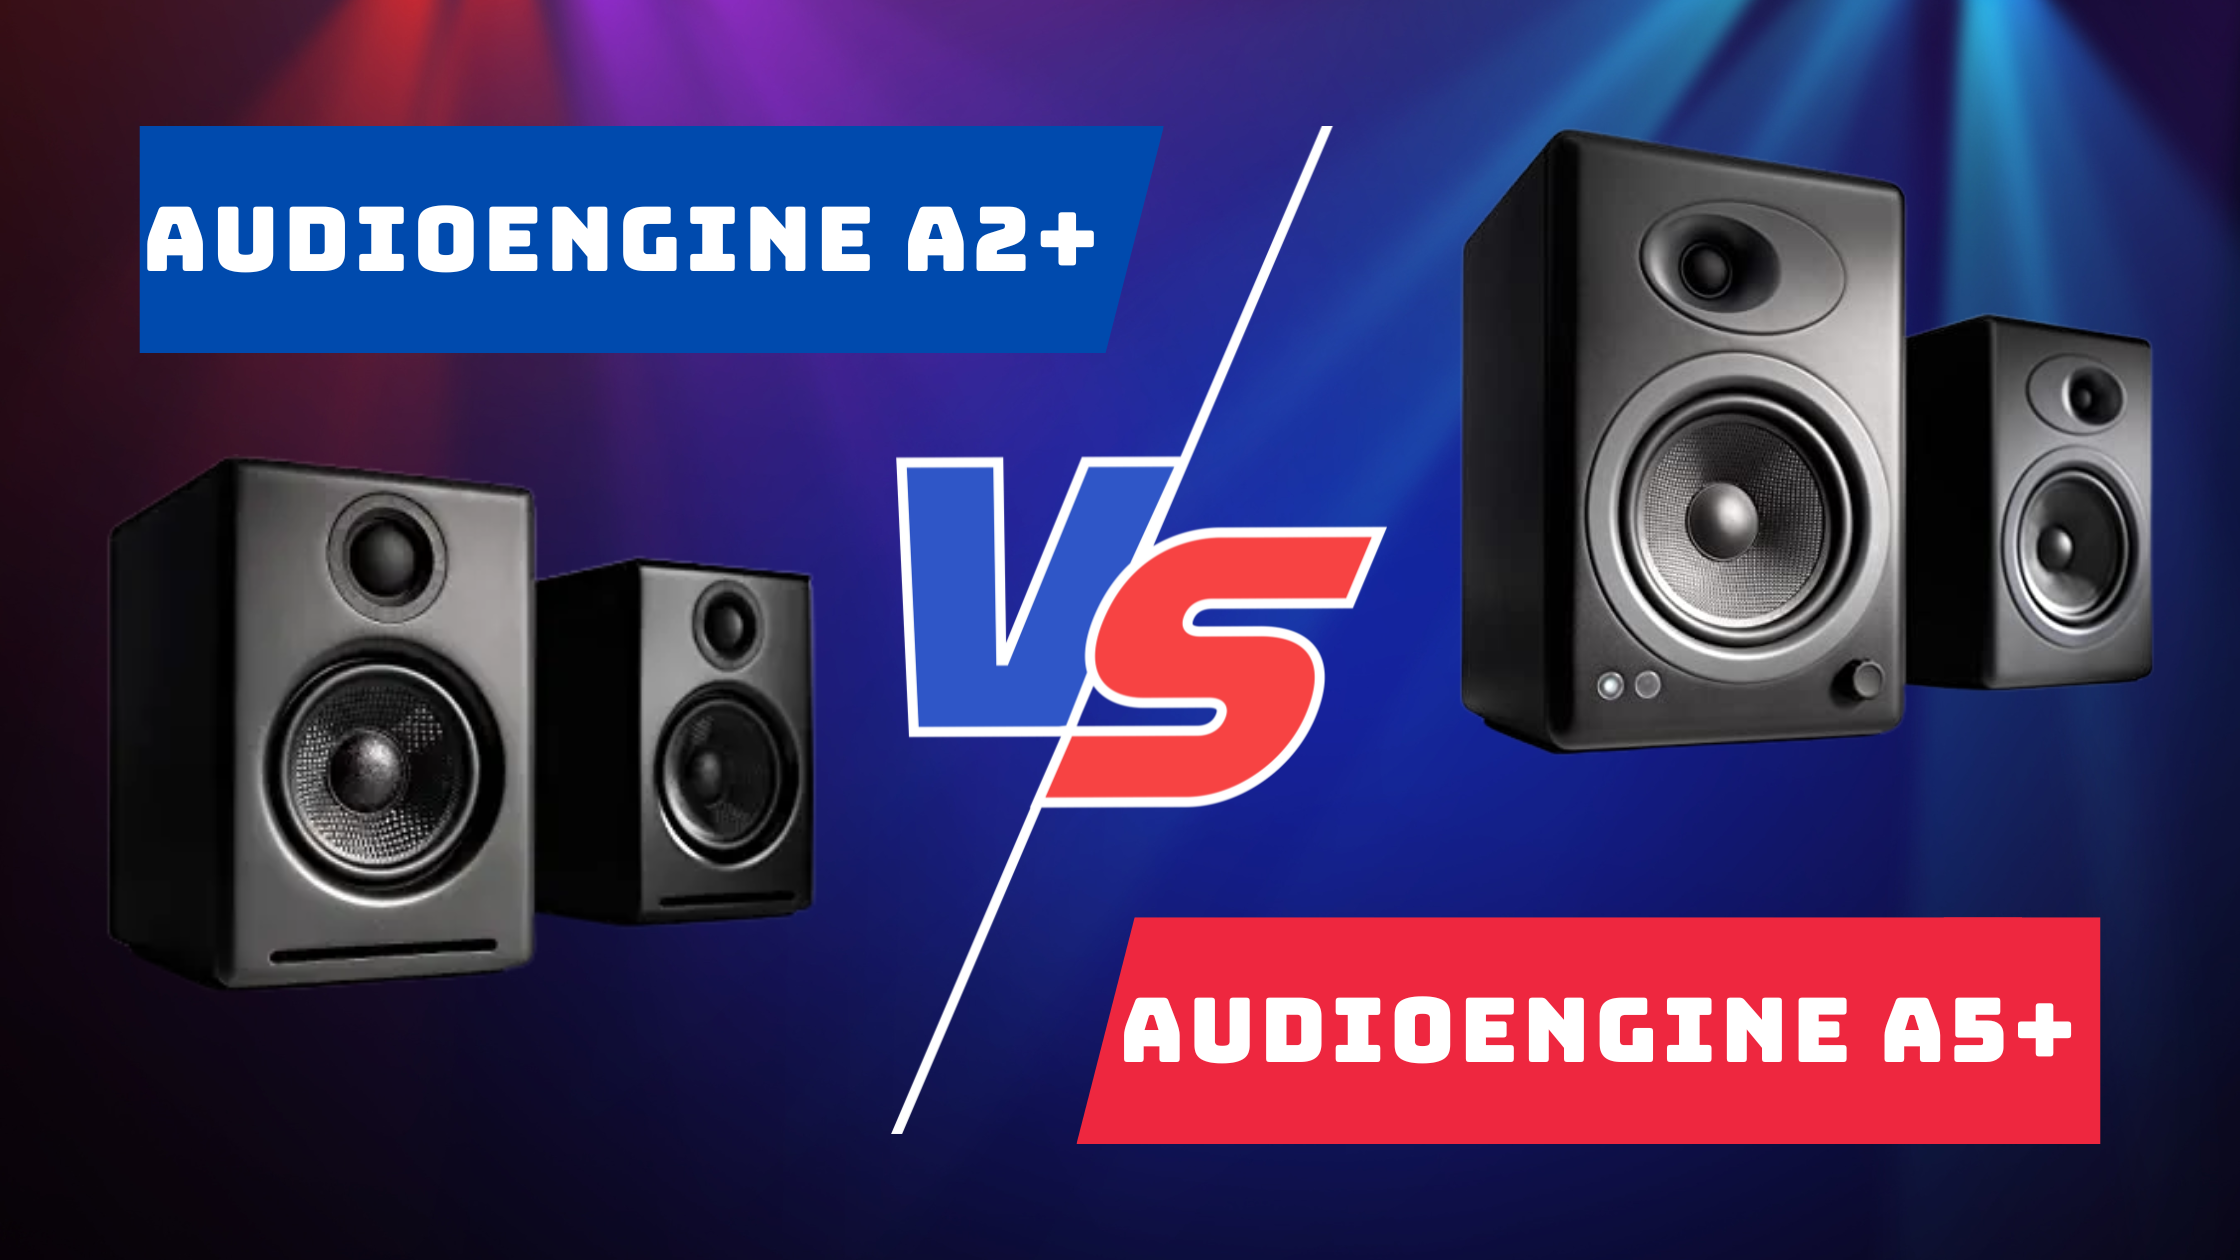 Audioengine A2+ Vs A5+